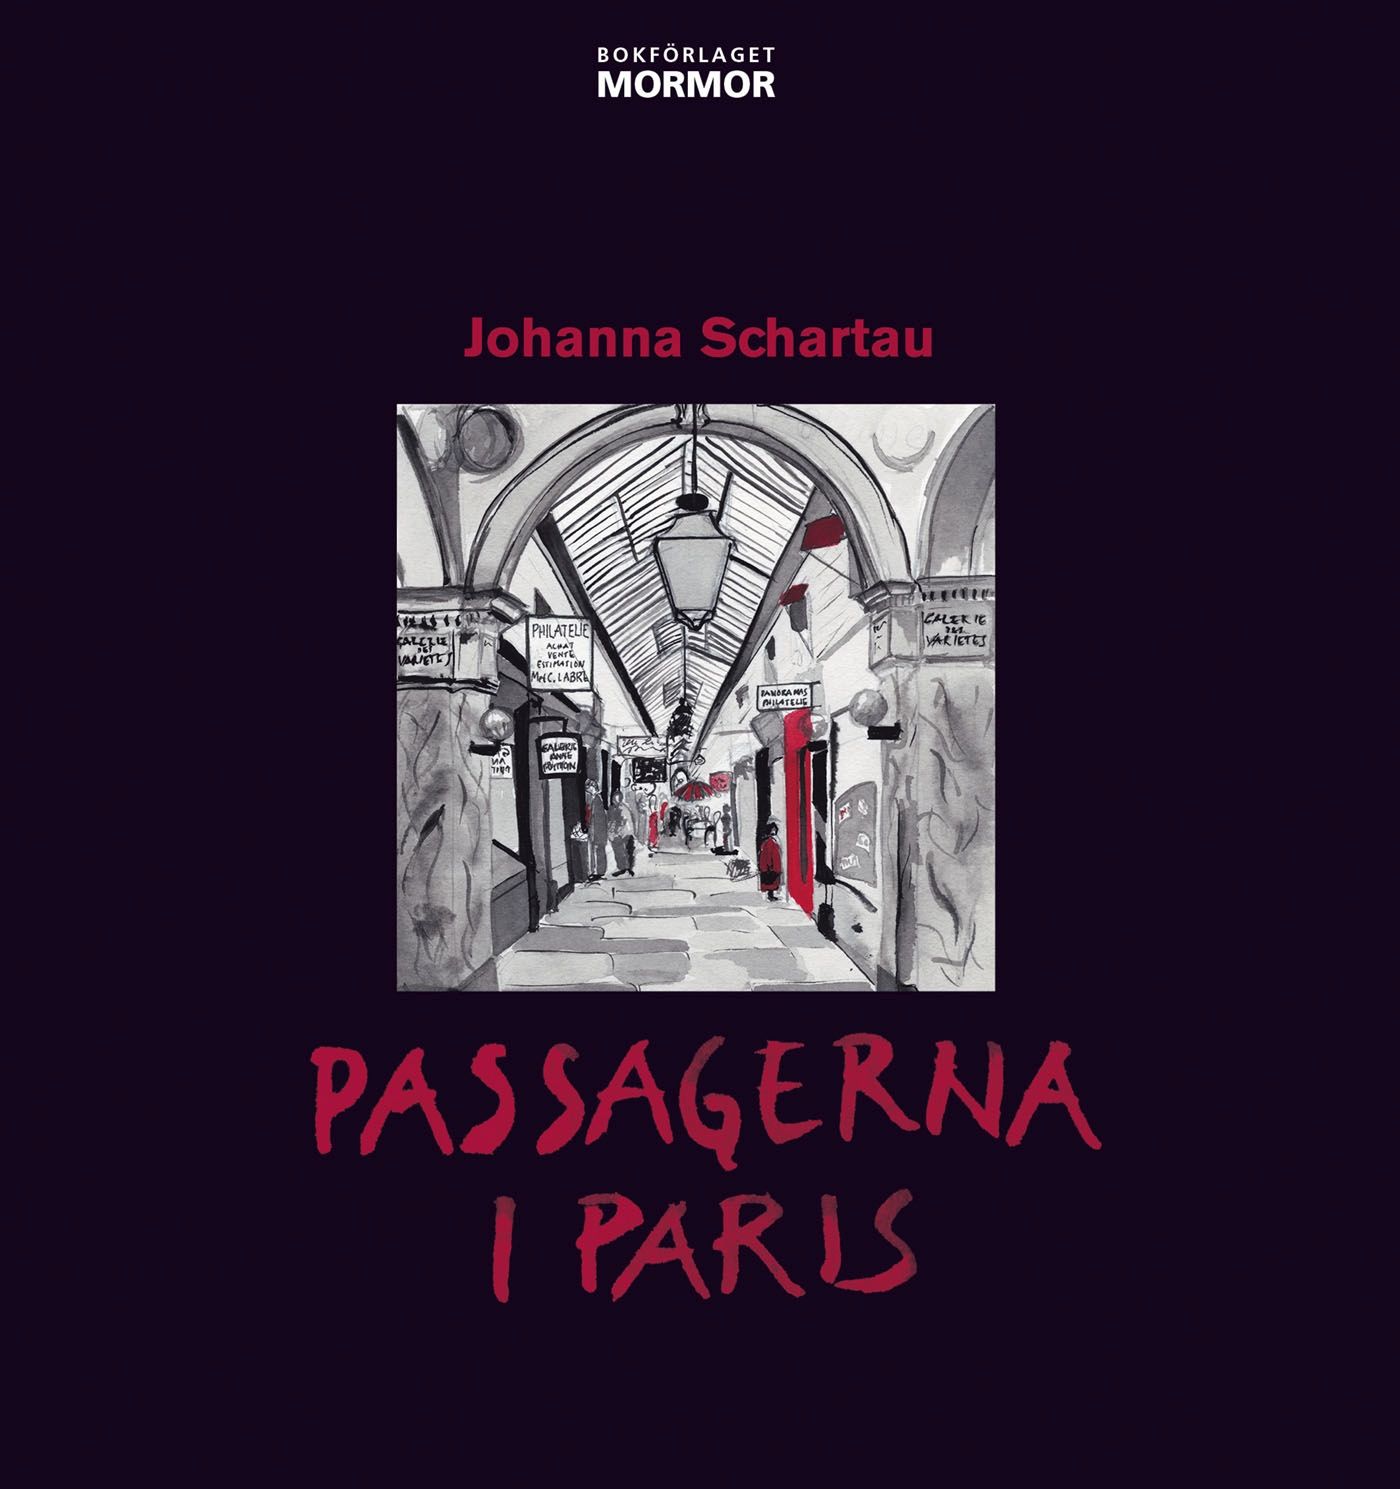 Passagerna i Paris, e-bok av Johanna Schartau